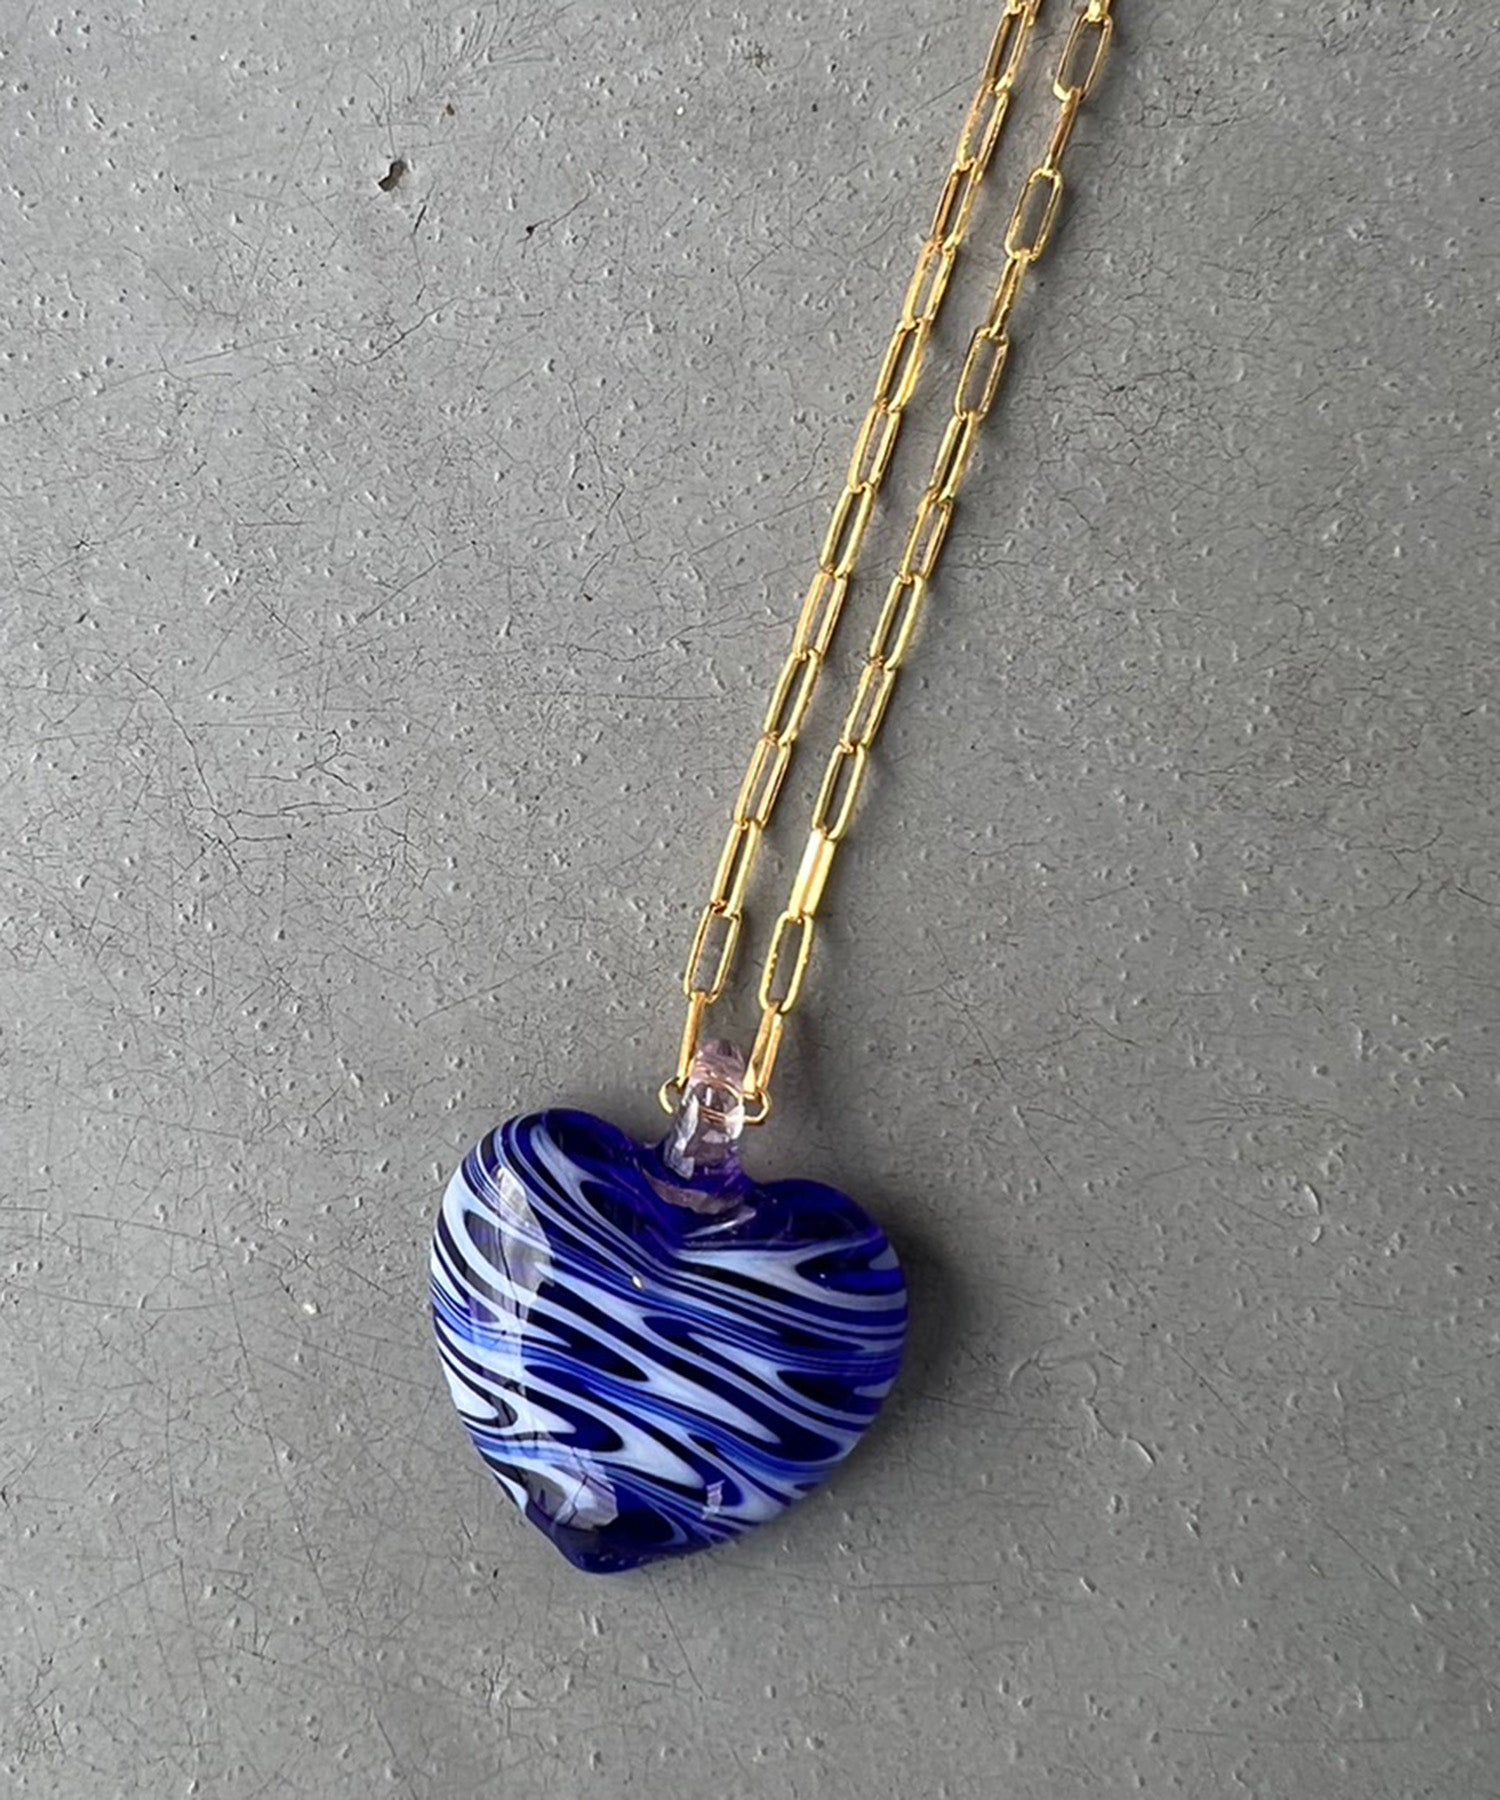 【Ninfa Handmade】Ola Heart Necklace